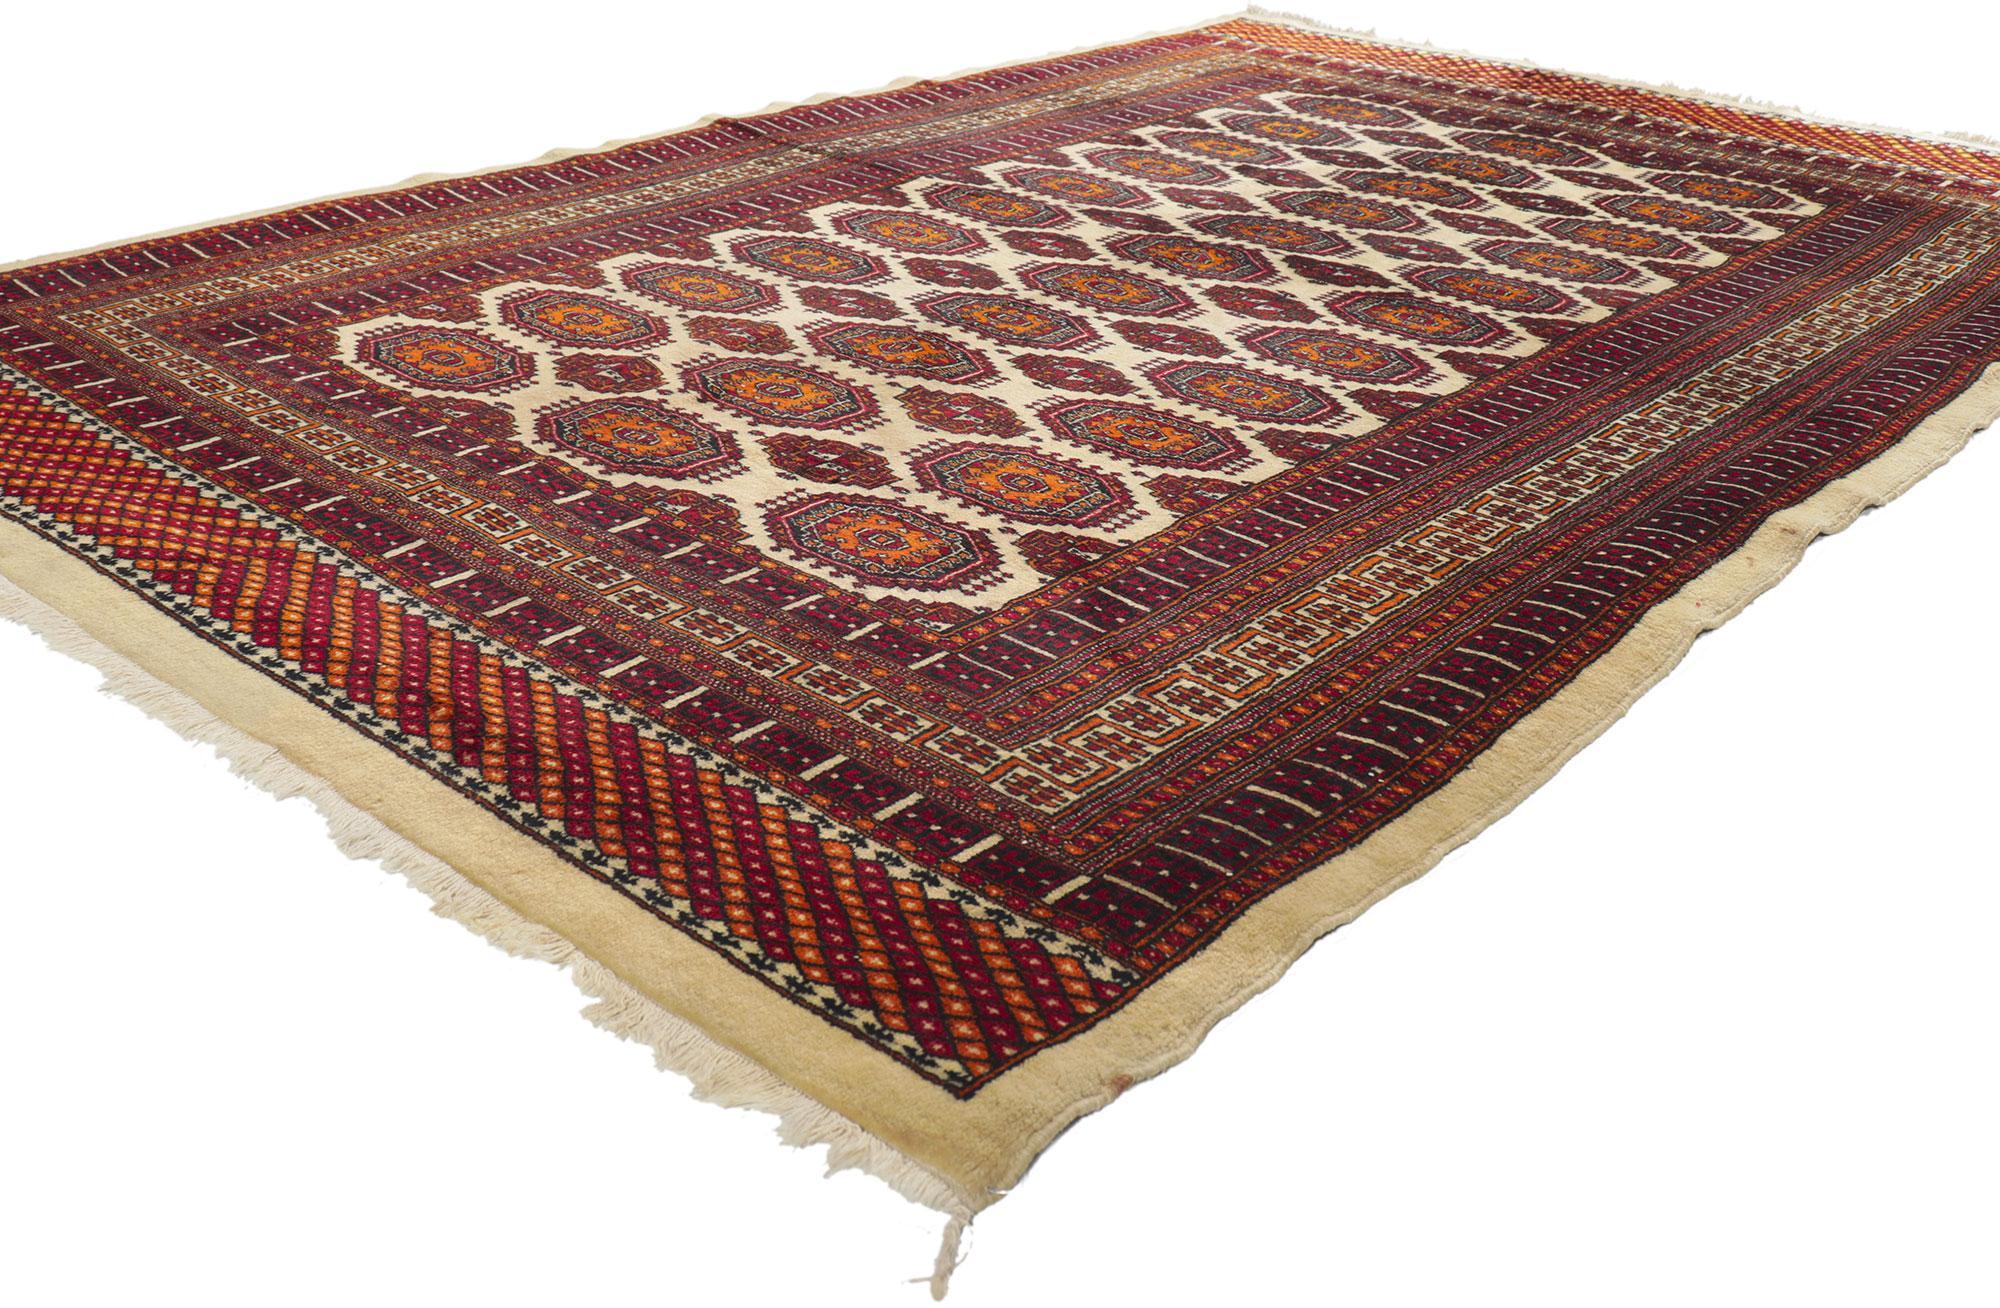 74502 Tapis pakistanais vintage Bokhara, 05'00 x 08'00. Émanant d'un style nomade avec des détails et une texture incroyables, ce tapis Bokhara pakistanais vintage noué à la main est une vision captivante de la beauté tissée. Le design géométrique